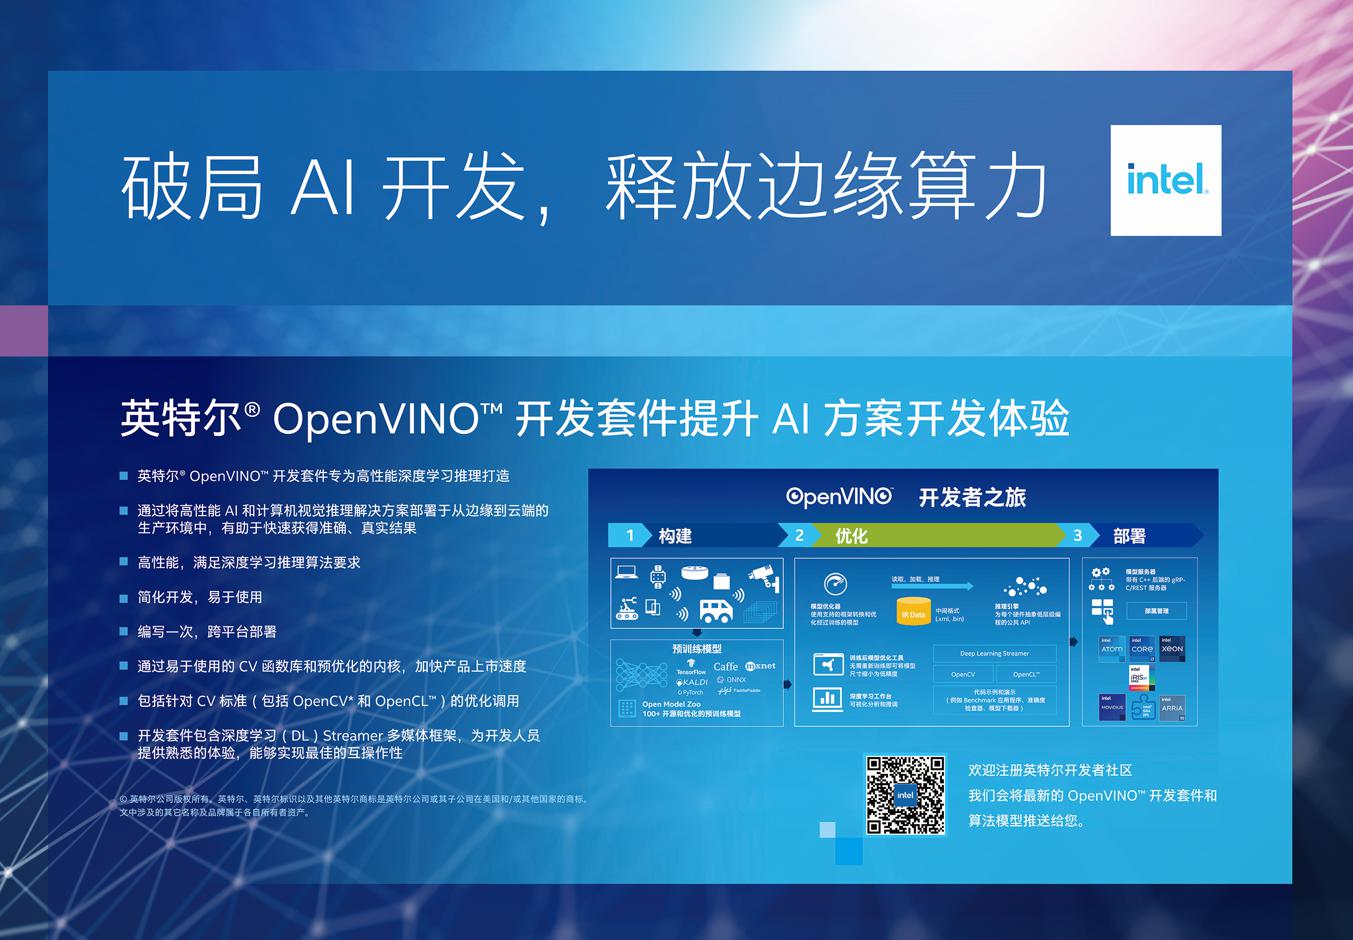 WAIC 2021：英特尔赋能智能边缘与AI产业， 践行环境可持续发展